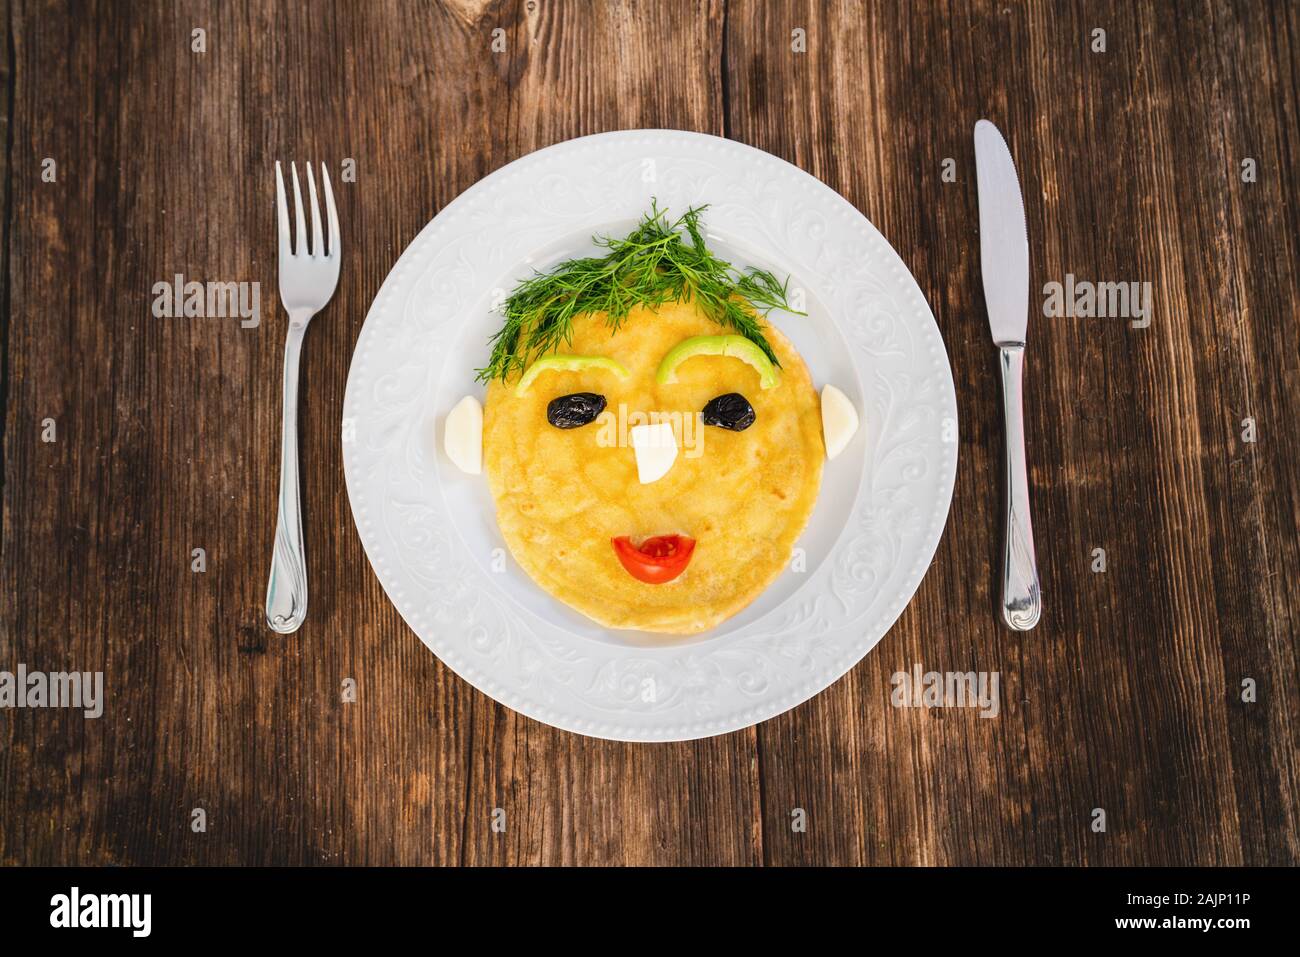 Funny préparé omelette avec la forme de visage humain pour les enfants sur un fond de bois. Banque D'Images